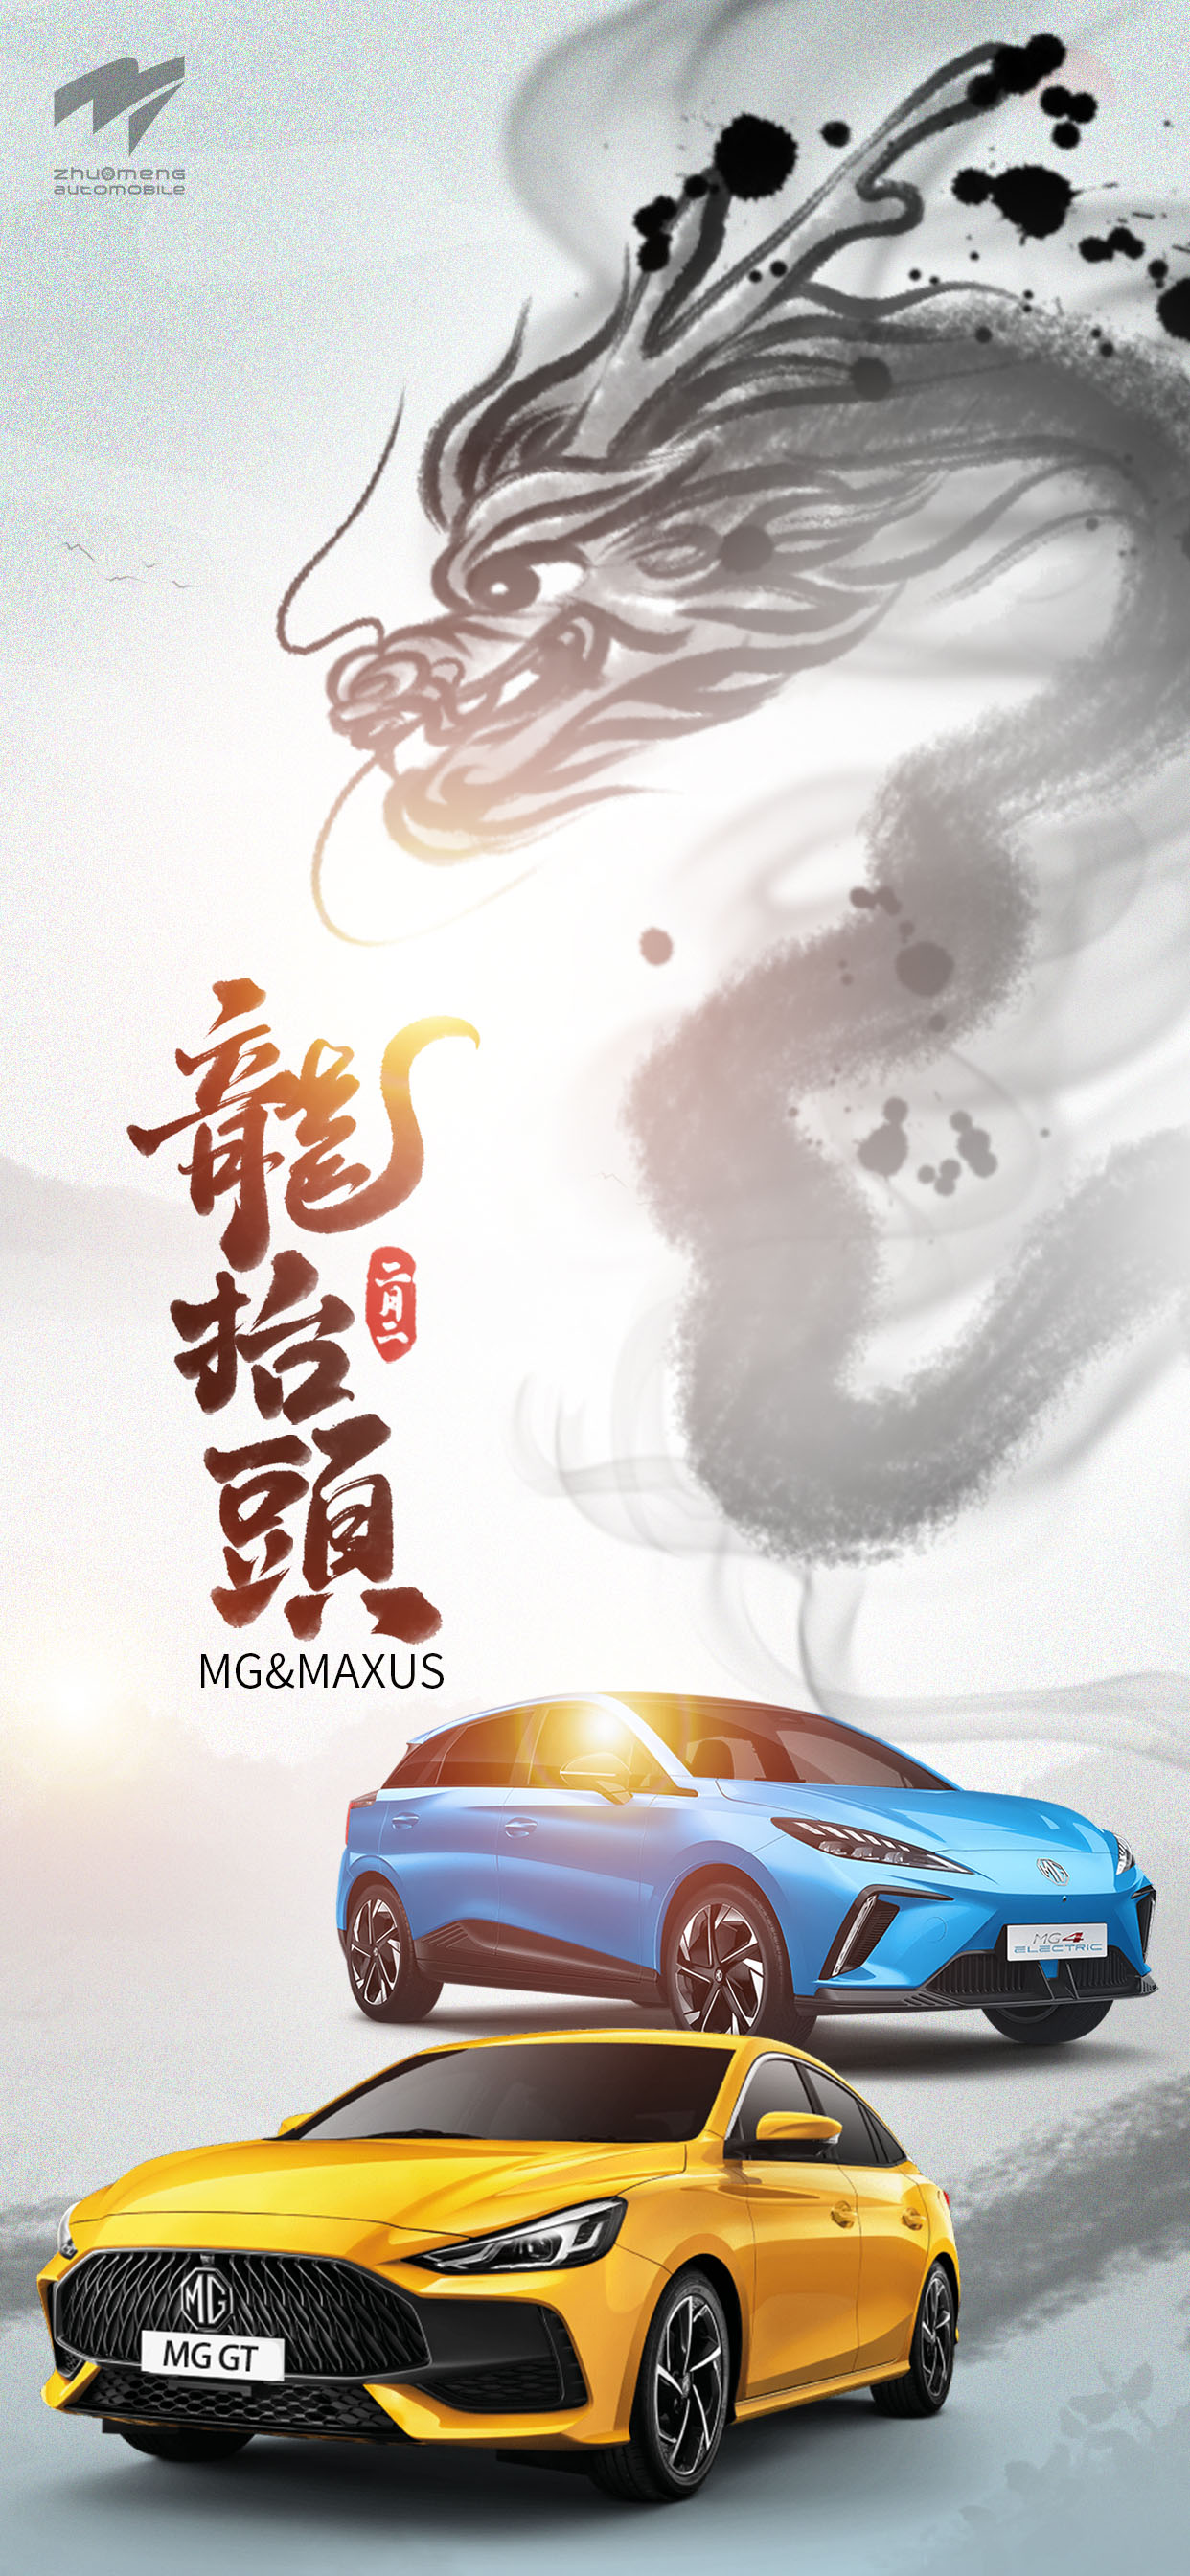 Zhuo Meng (Shanghai) Automobile Co., Ltd. Dragon Head (a holdnaptár szerint február 2.)